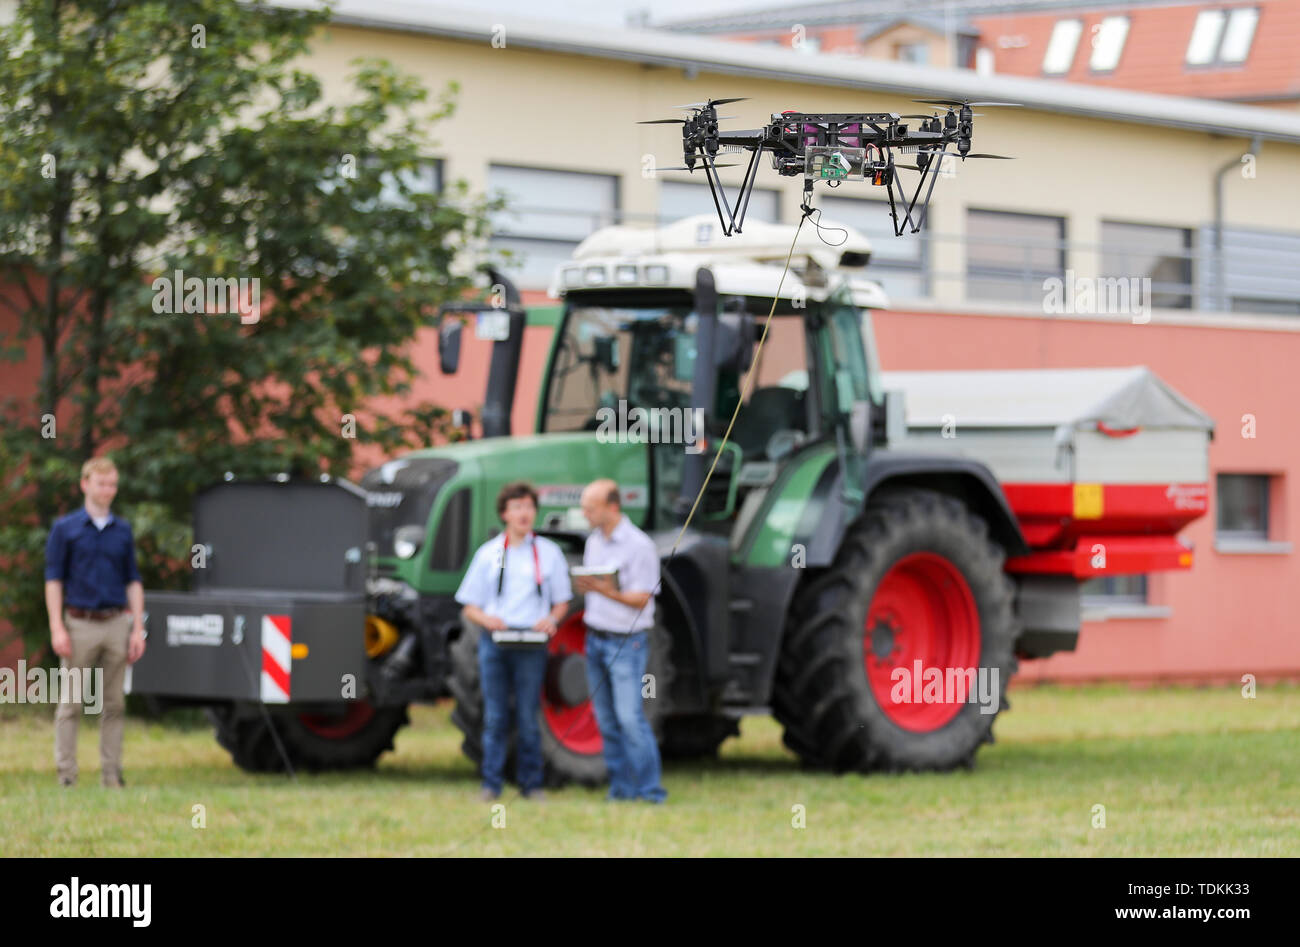 Arzberg, Germania. 17 Giugno, 2019. I dipendenti di TU di Dresda presente un drone industriale che trasmette automaticamente le foto aeree per l'agricoltore attraverso la rete di telefonia mobile. L'agricoltore può quindi leggere lo stato della vegetazione, la necessaria irrigazione fertilizzazione o sul suo terreno, per esempio. Lo stesso giorno, il sassone Ministero dell'Agricoltura ha lanciato un campo sperimentale per 5G in agricoltura per sostenere le aziende agricole nei loro sforzi di digitalizzazione. Credito: dpa picture alliance/Alamy Live News Credito: dpa/Alamy Live News Foto Stock